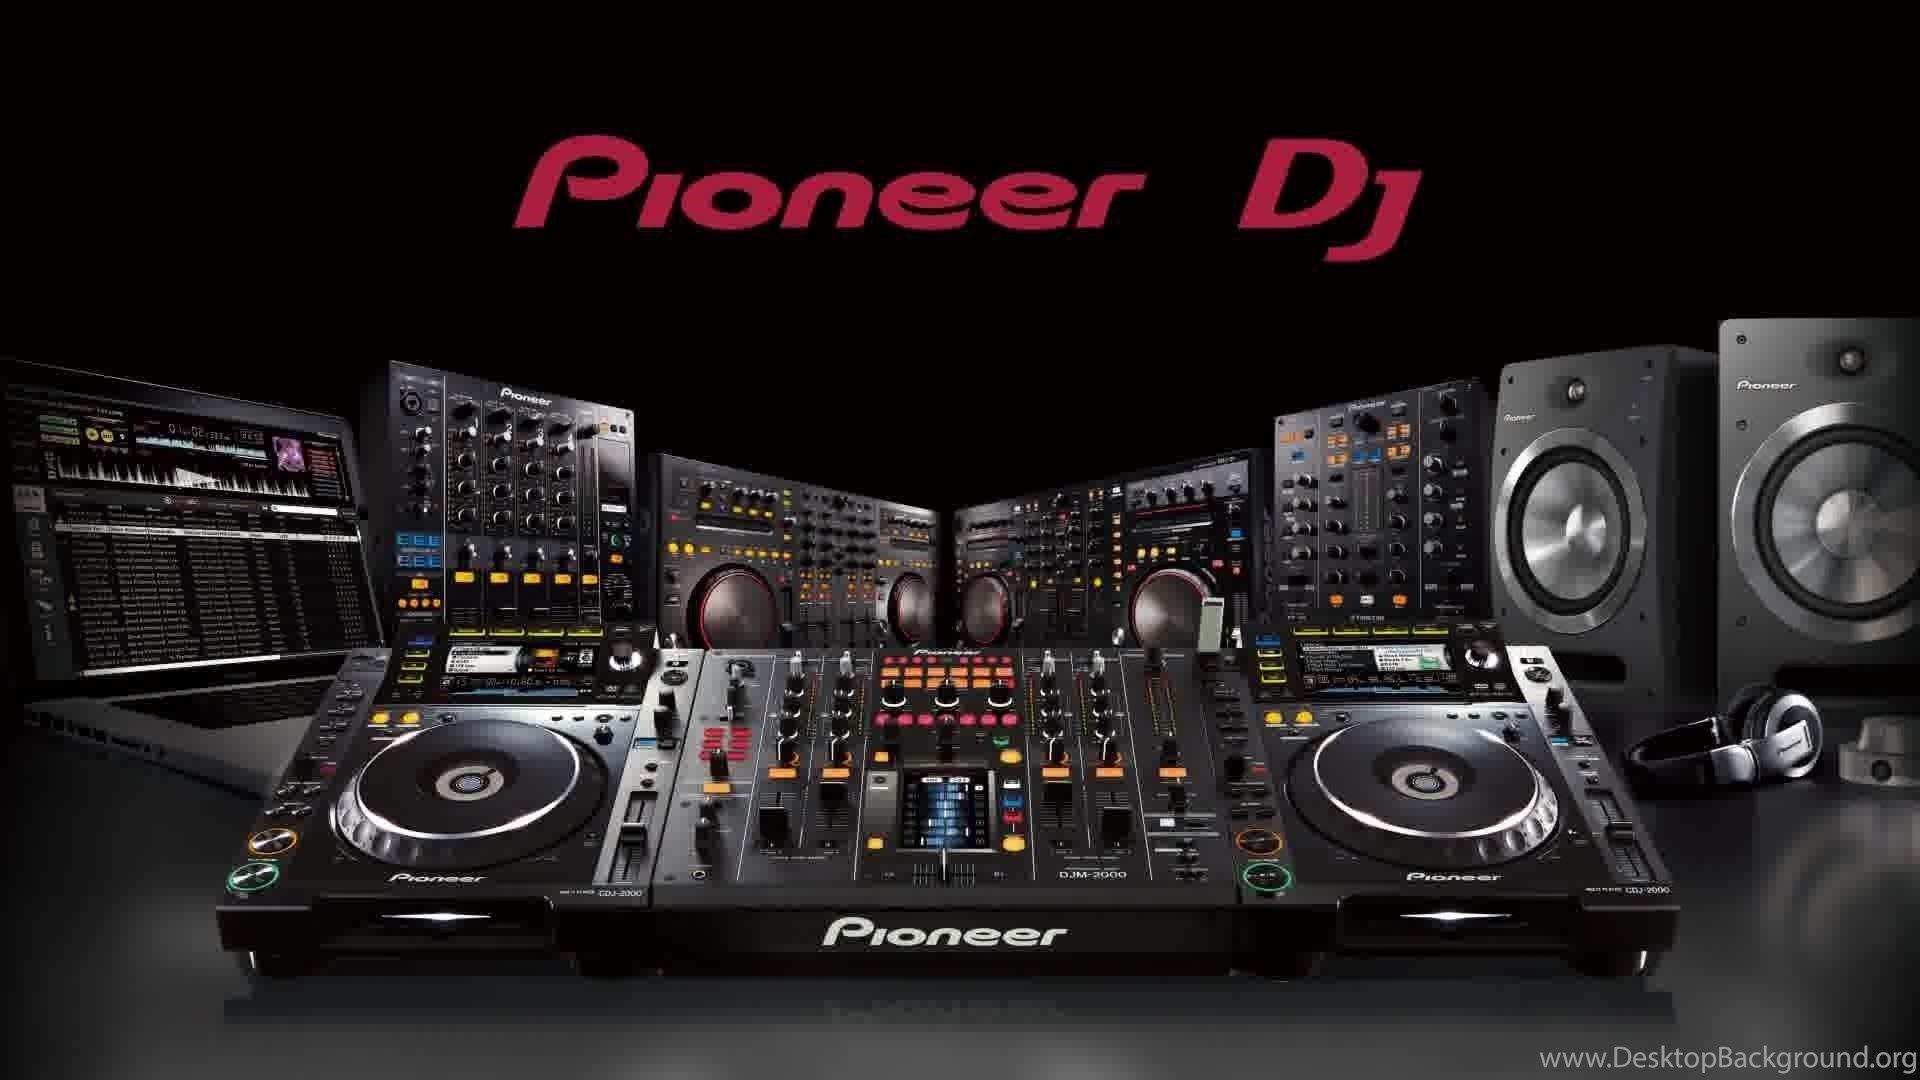 Pioneer dj mixer wallpaper Desktop Background